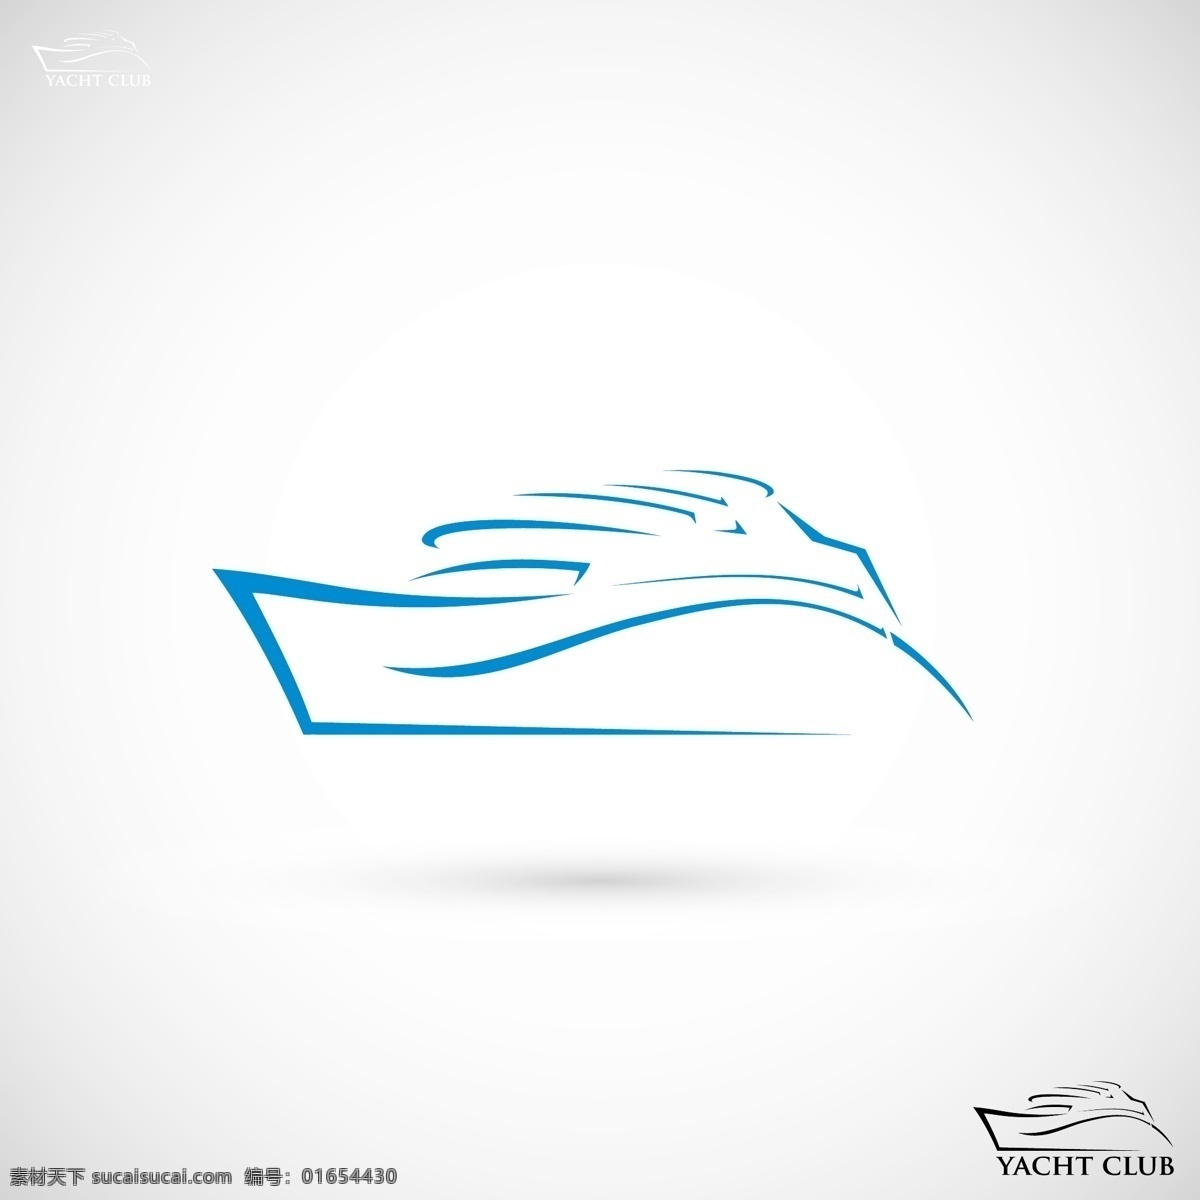 游艇 logo 创意 logo图形 标志设计 商标设计 企业logo 公司logo 行业标志 标志图标 矢量素材 白色